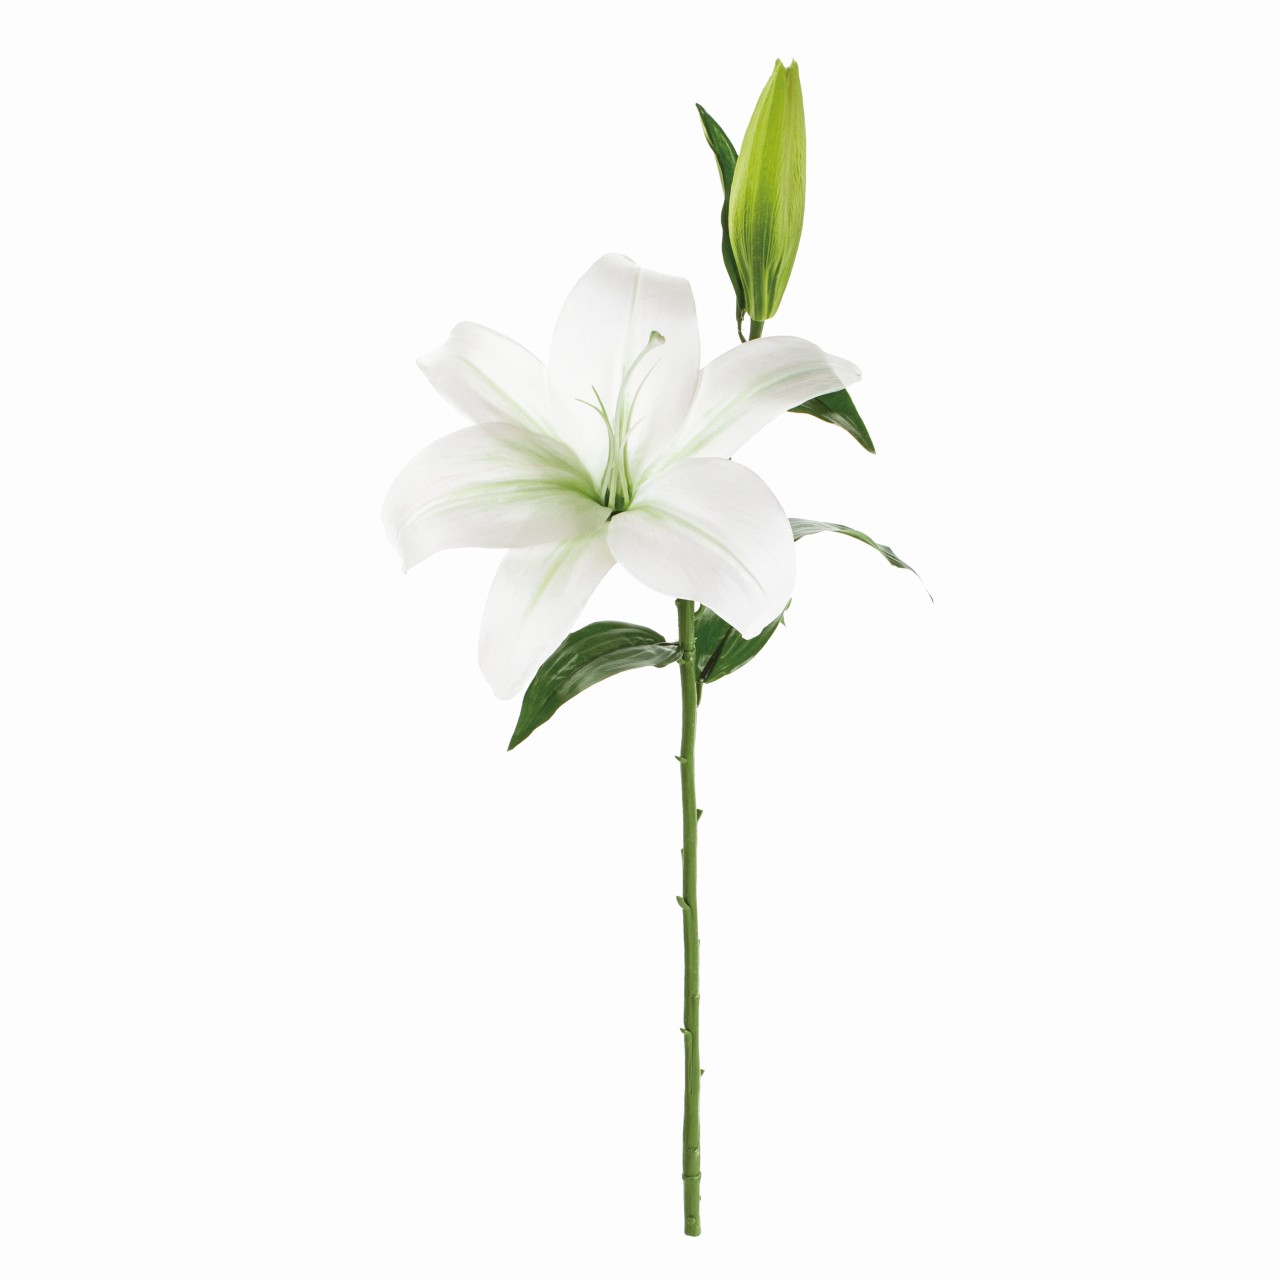 マイフラ 通販 Magiq クイーンカサブランカ ホワイト アーティフィシャルフラワー 造花 Fm 001 ユリ カサブランカ ホワイト Magiq アーティフィシャルフラワー 造花 全国にmagiq 花器 花資材などをお届けします